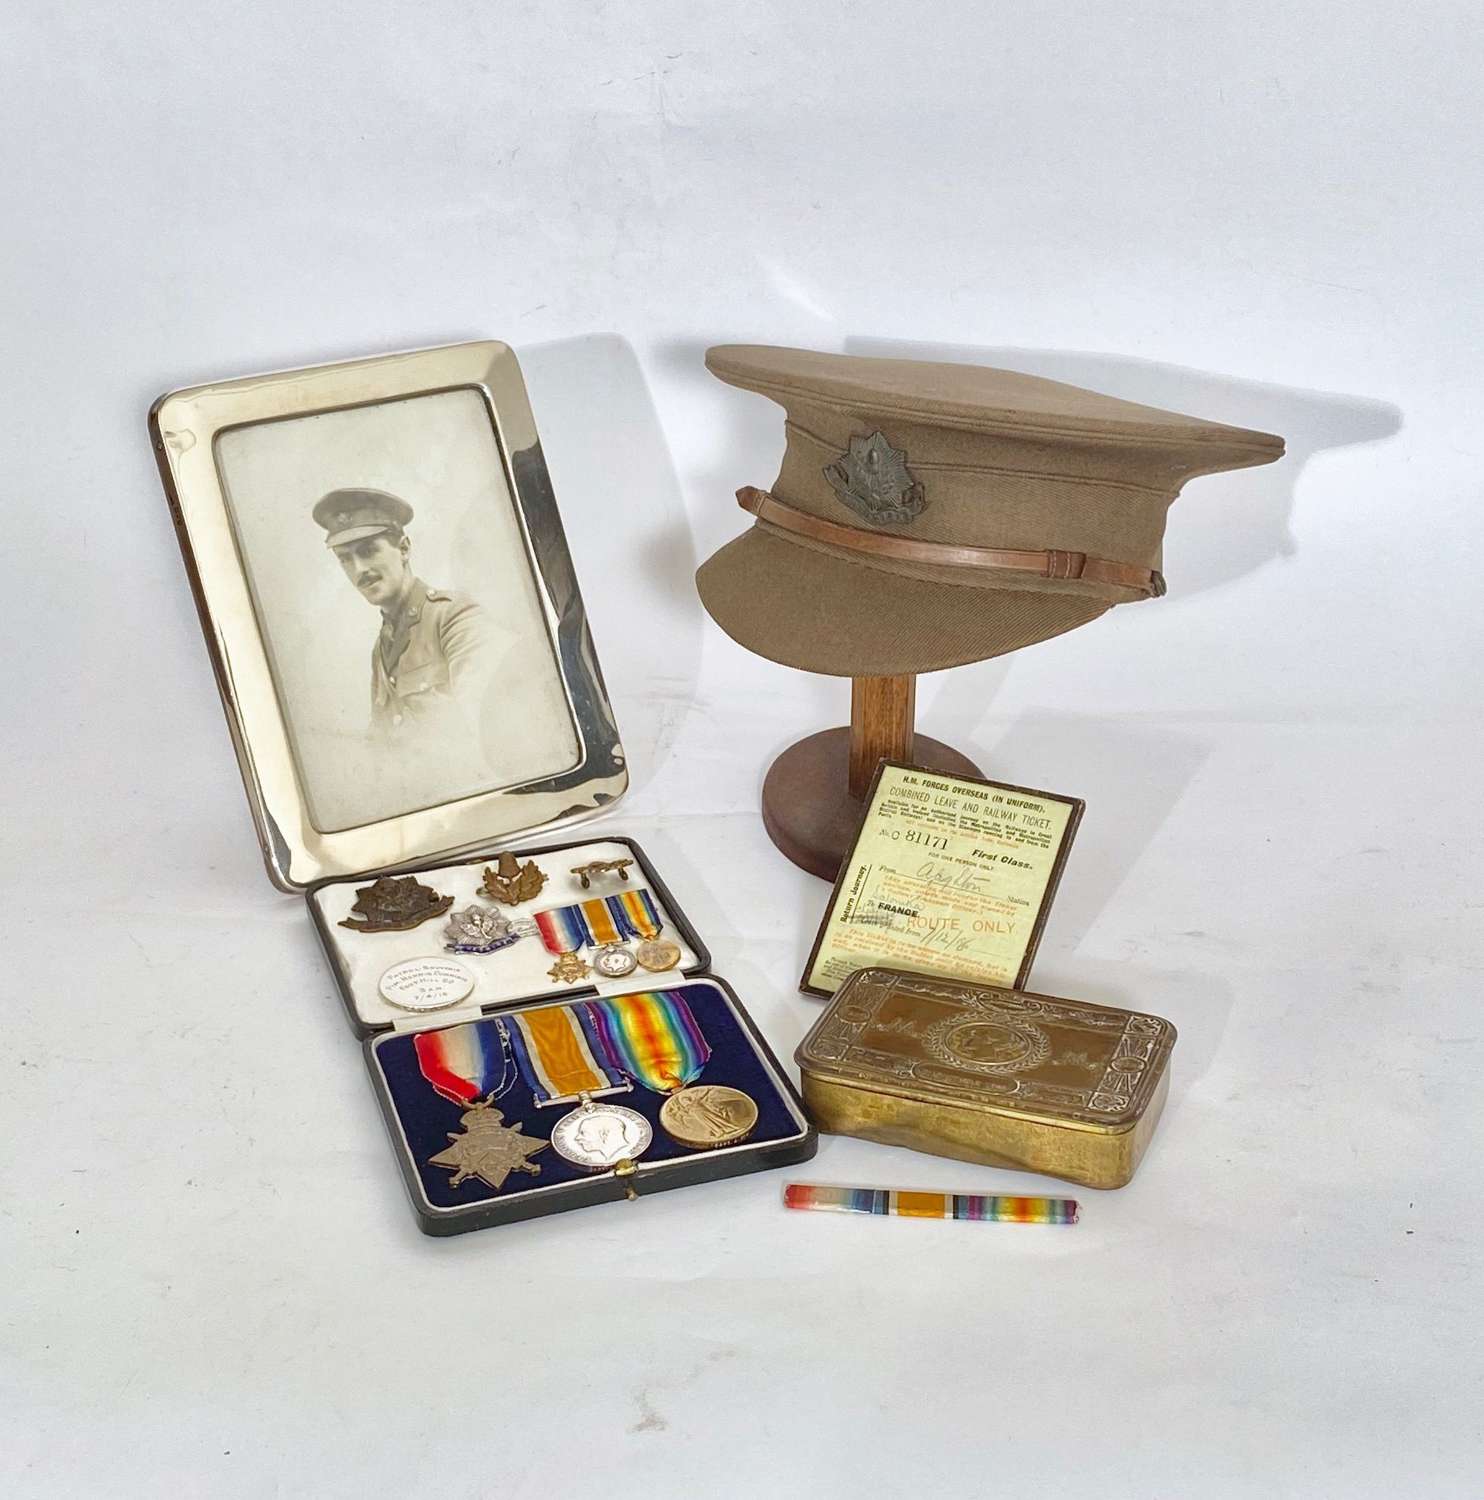 WW1 Cap Medals etc of Captain Pim 1st Bn Cheshire Regiment.